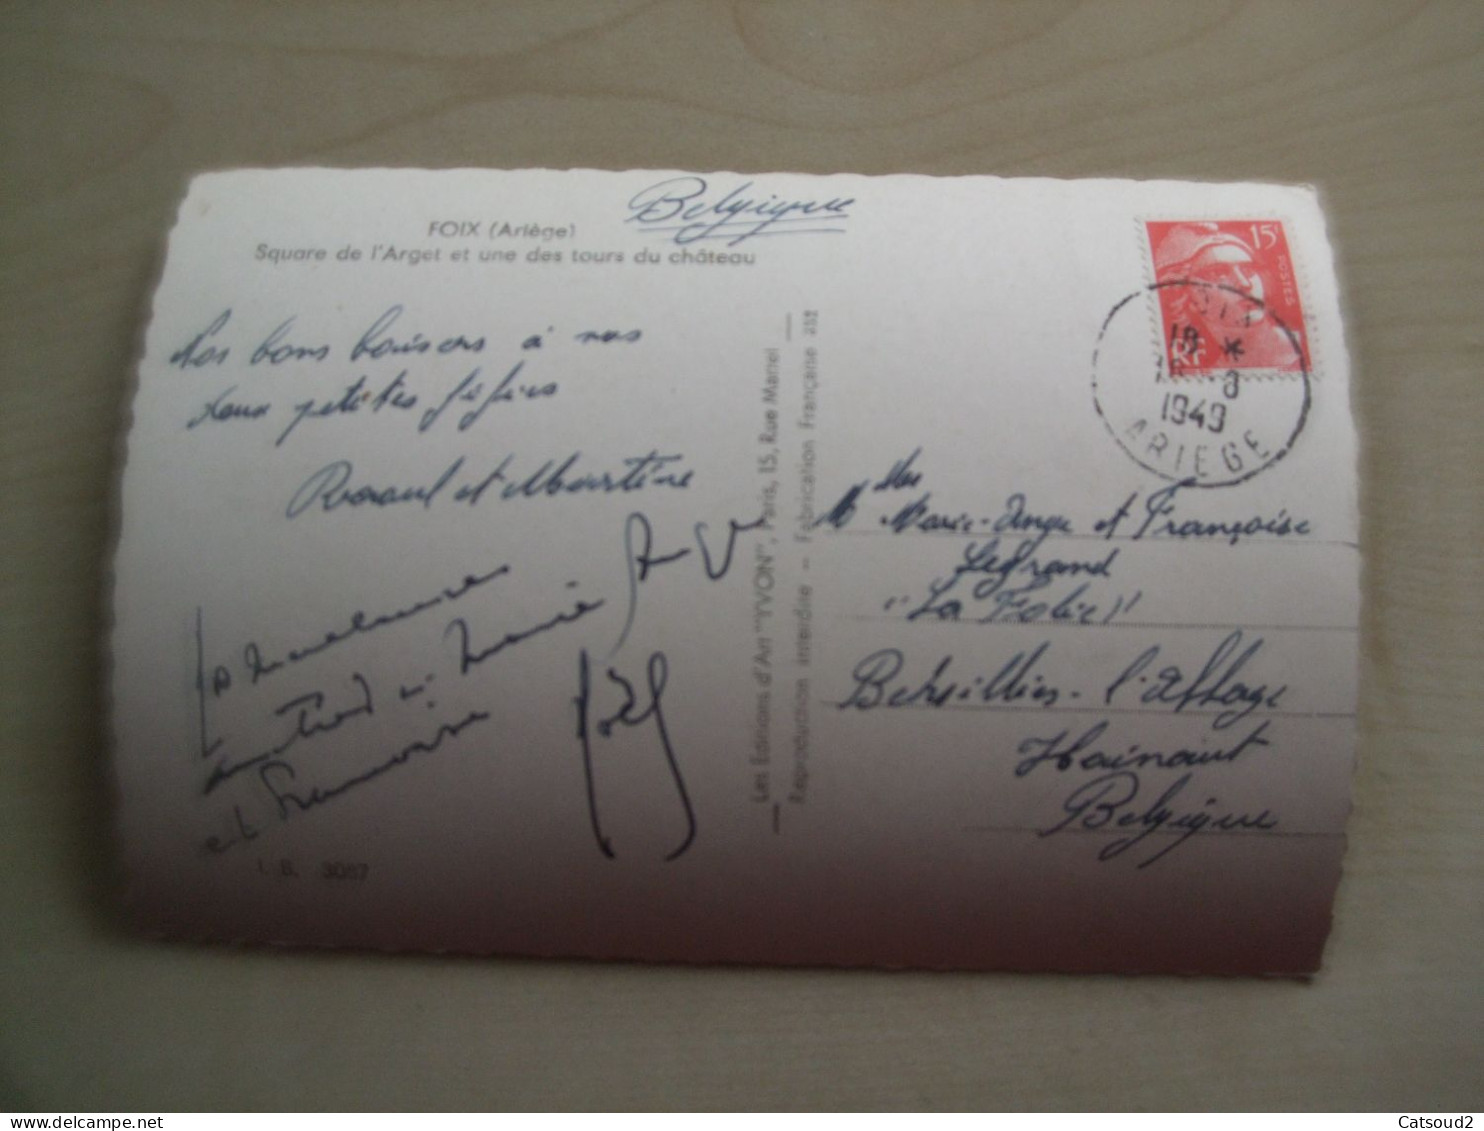 Carte Postale Ancienne 1949 FOIX Square De L'Arget Et Une Des Tours Du Château - Foix